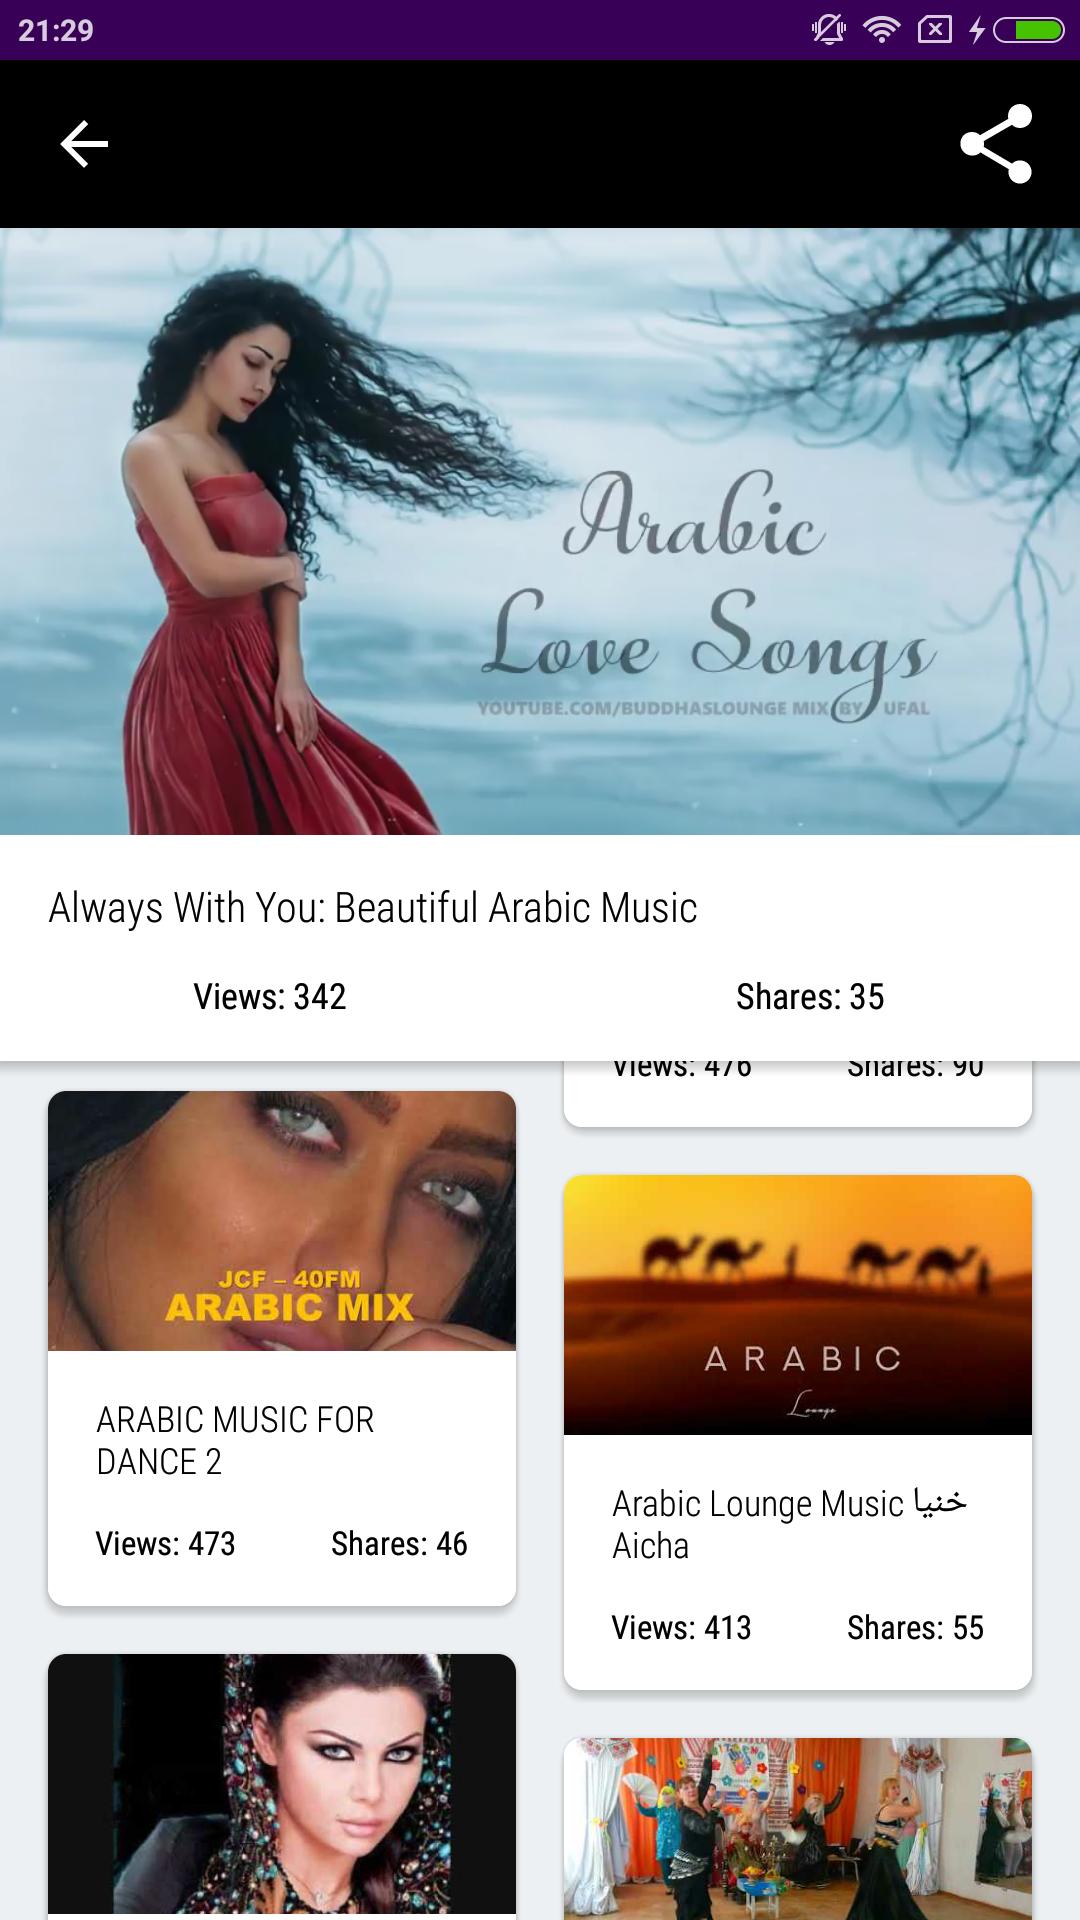 Арабик Мьюзик. Арабский музыкальный канал. Арабская мелодия на звонок. Арабик музыка.